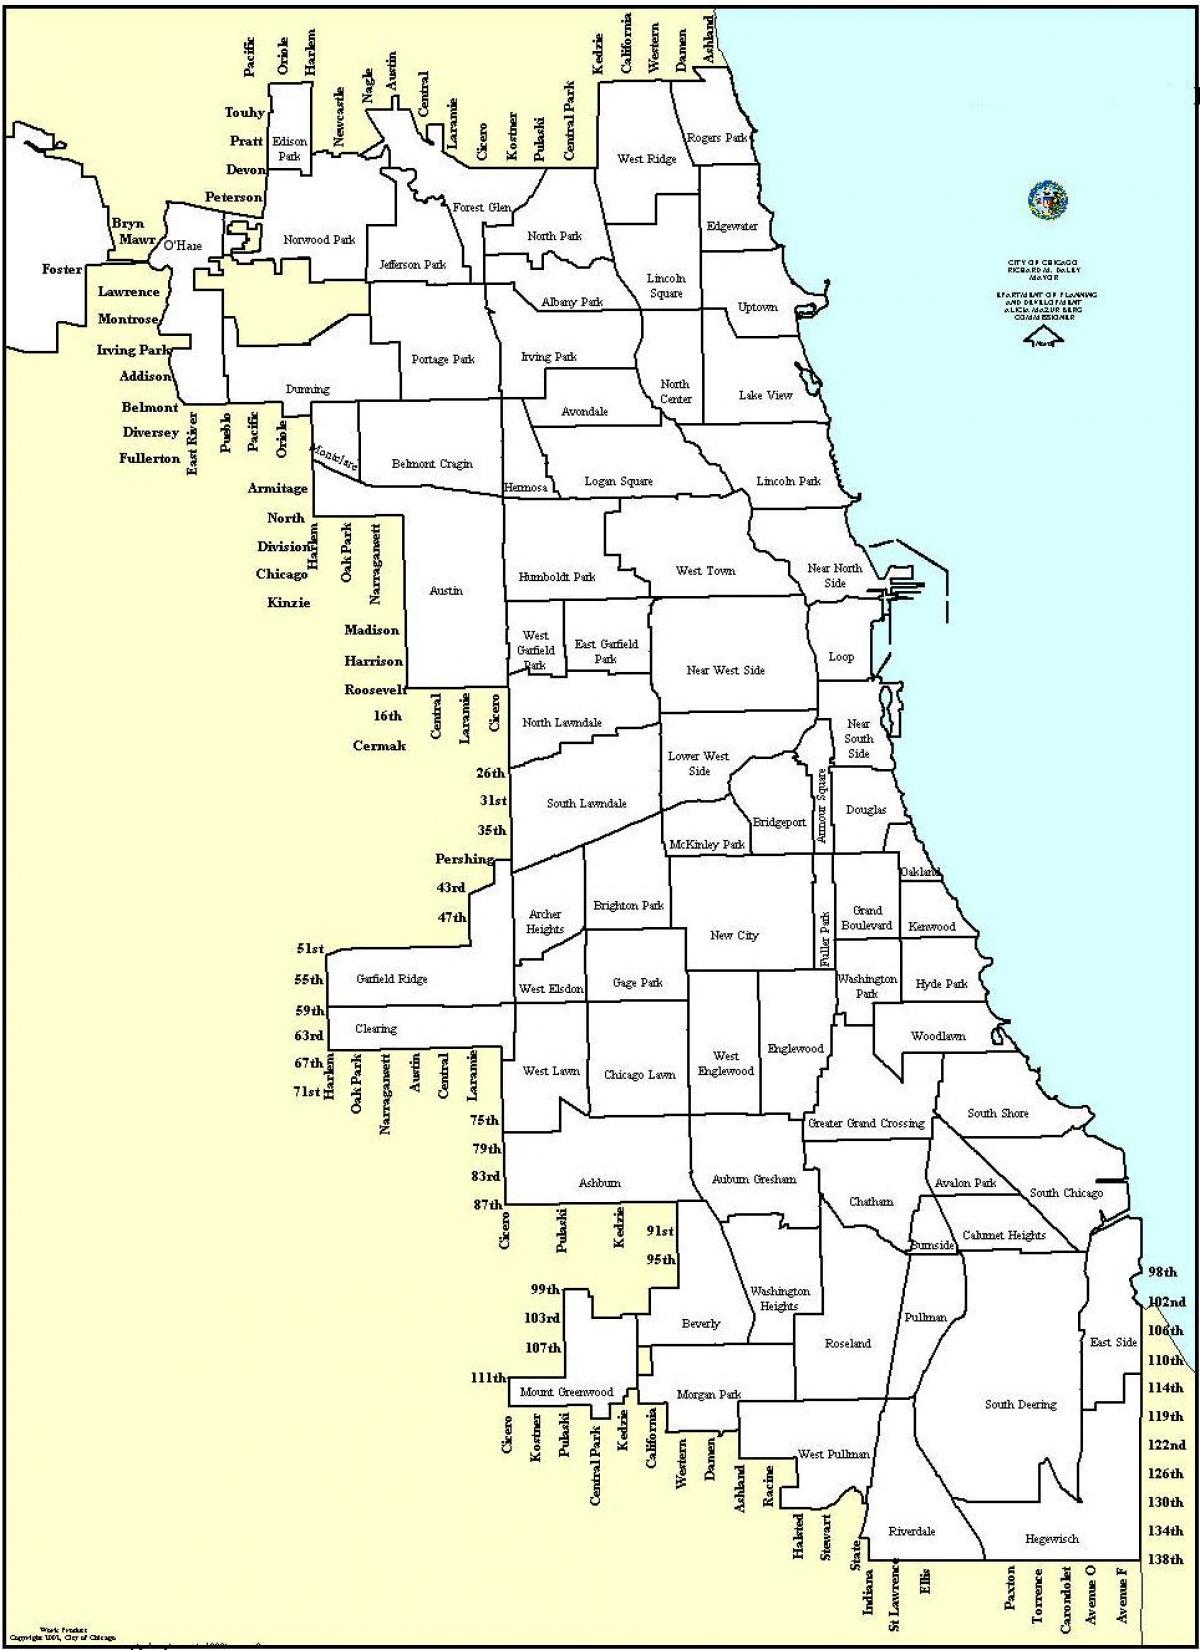 zónování mapa Chicago